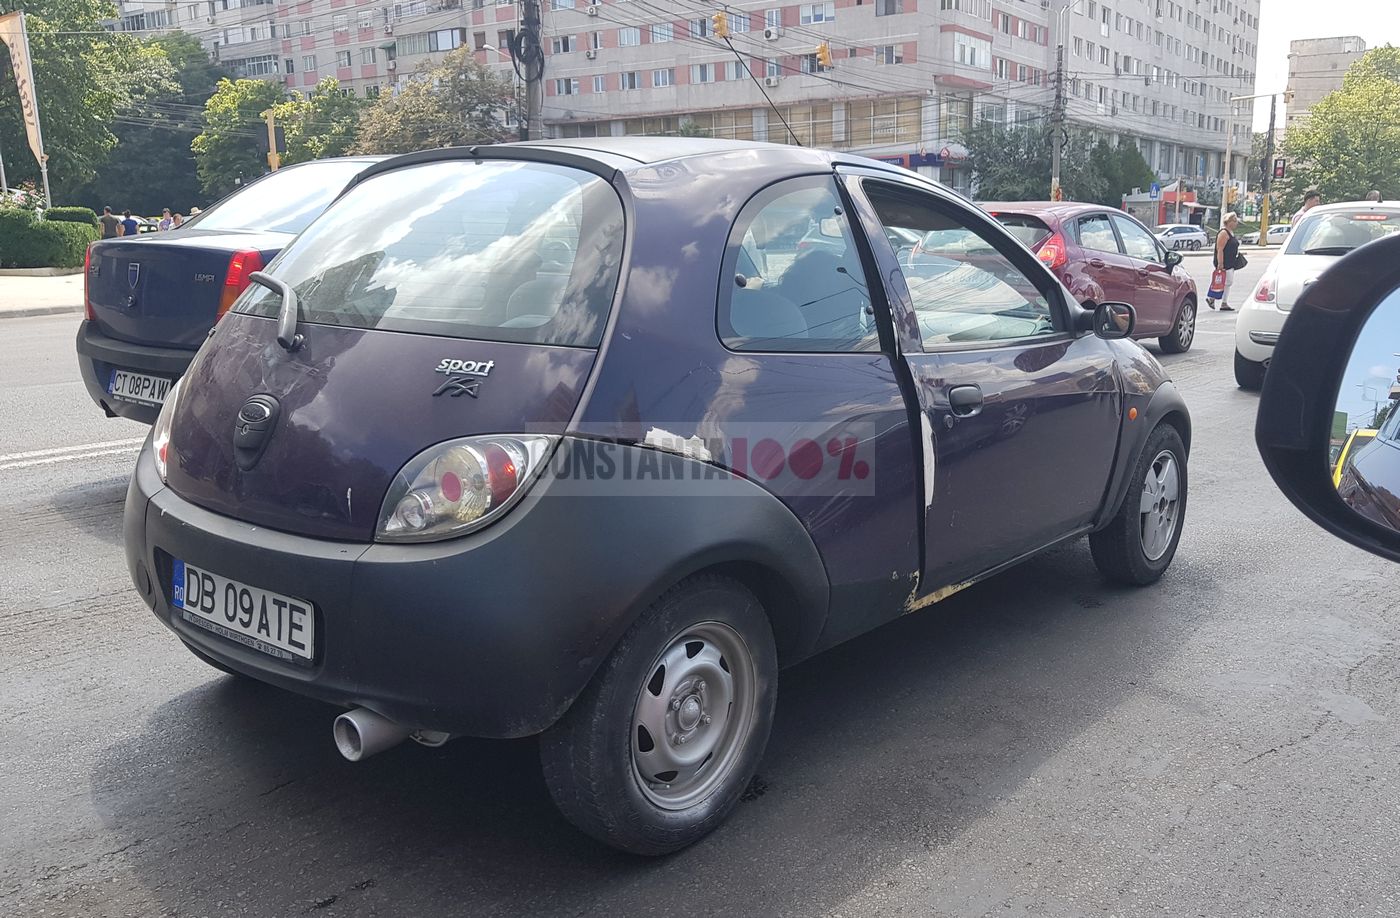 Primăria Iași vrea să interzică mașinile poluante din oraș. E bună măsura și pentru Constanța?